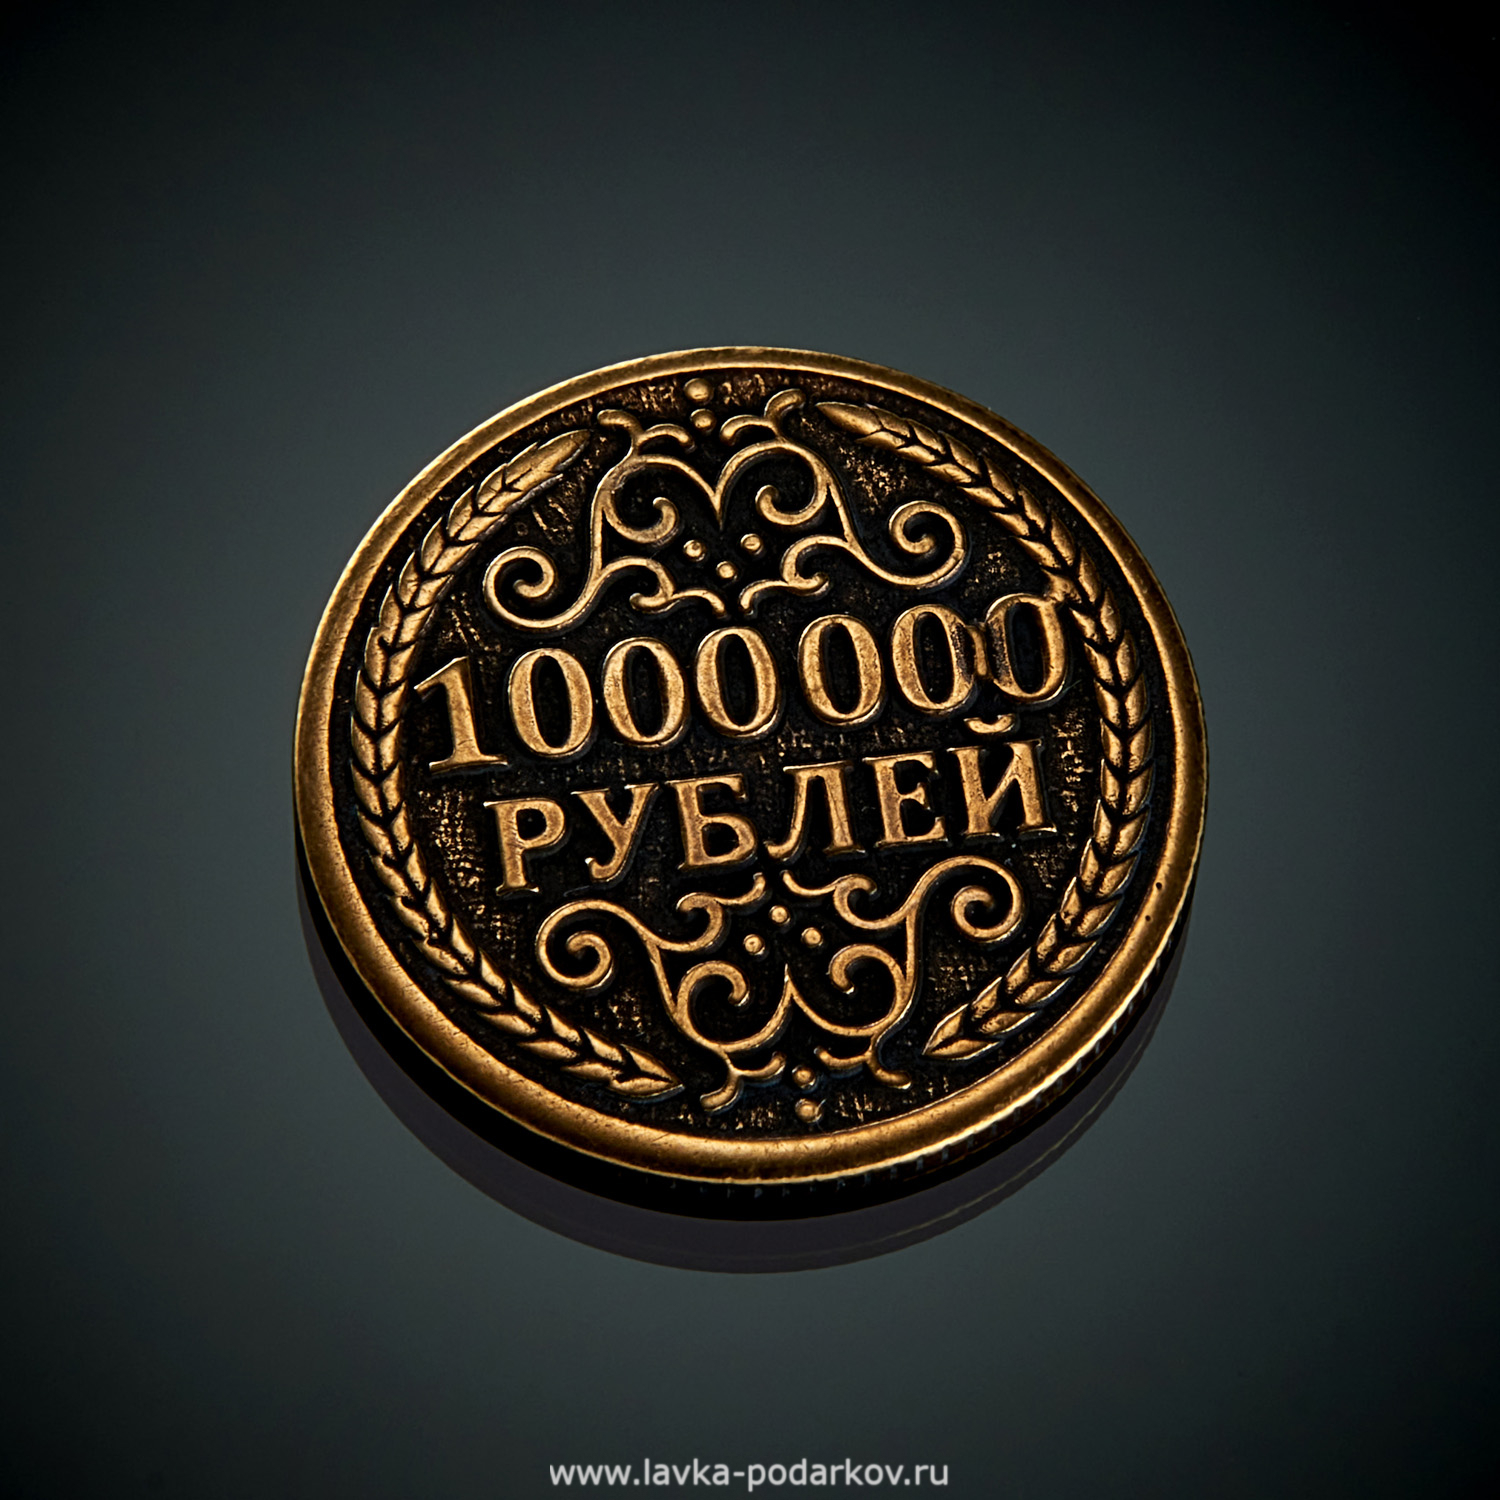 1000000 рублей семьям. Монета миллион рублей. Сувенирная монета 1000000 рублей. Железная монета 1000000 рублей. Монета 1 000 000 рублей.